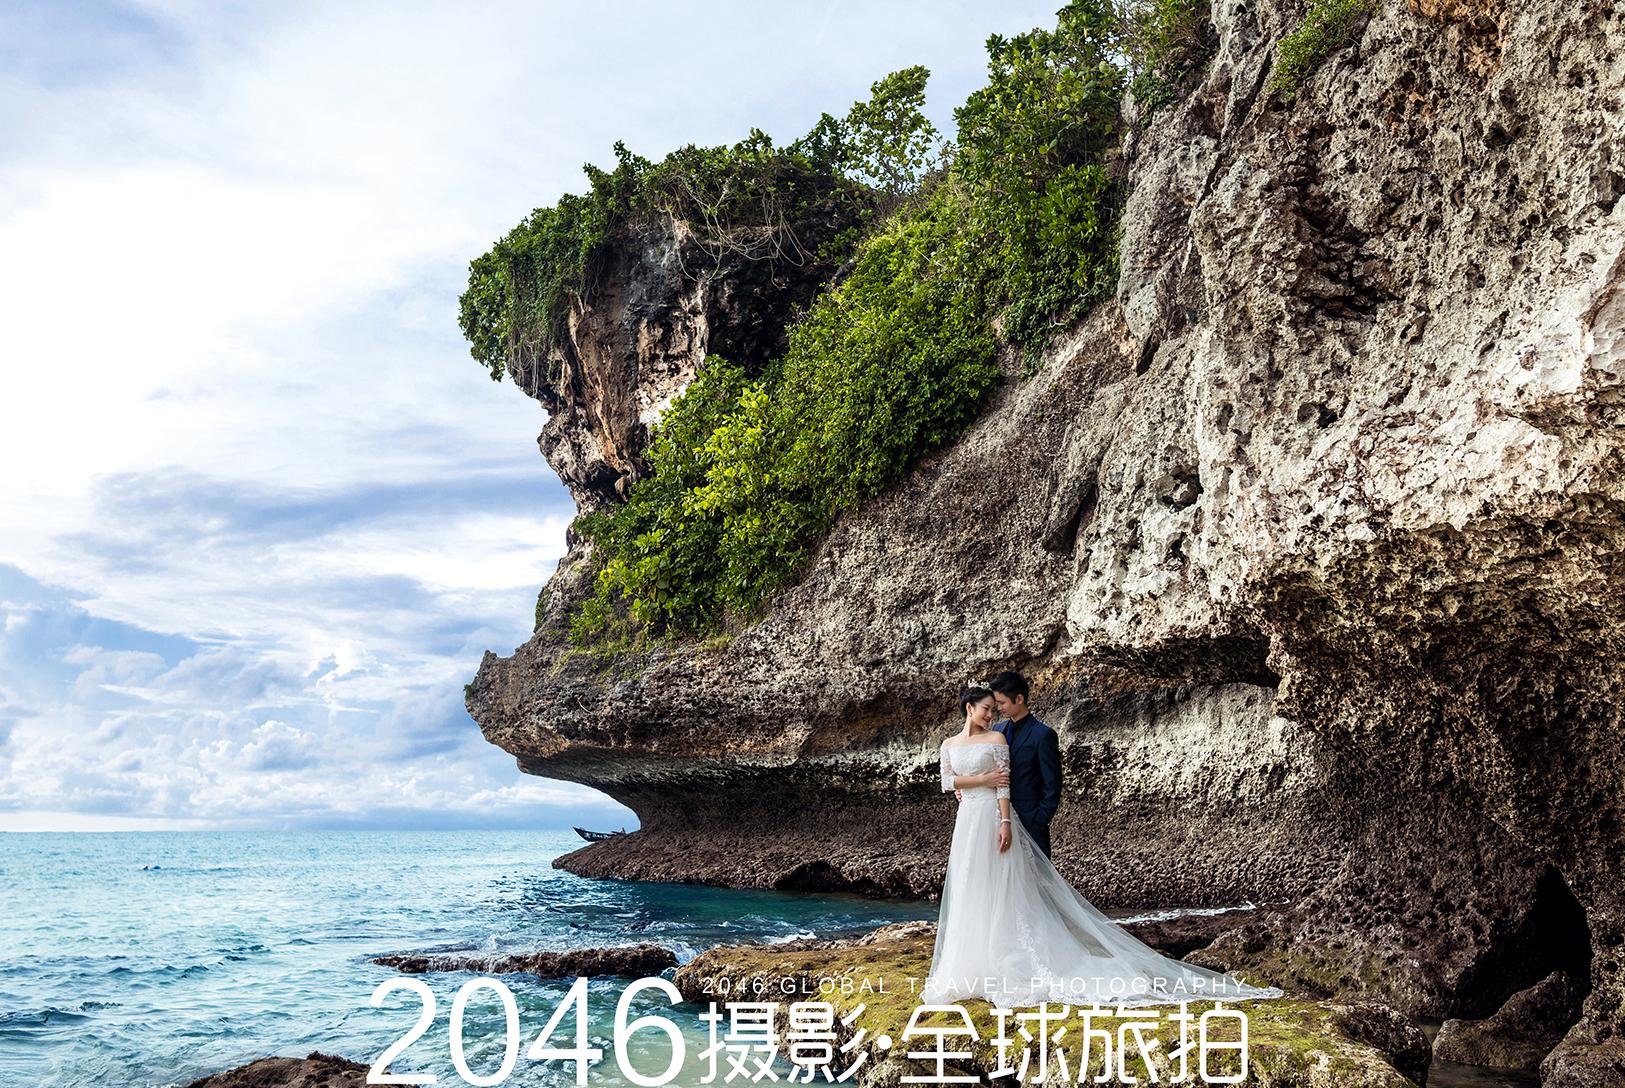 传统的印度尼西亚婚纱苹果壁纸2560x1600分辨率下载,传统的印度尼西亚婚纱苹果壁纸,图片 - IOS桌面